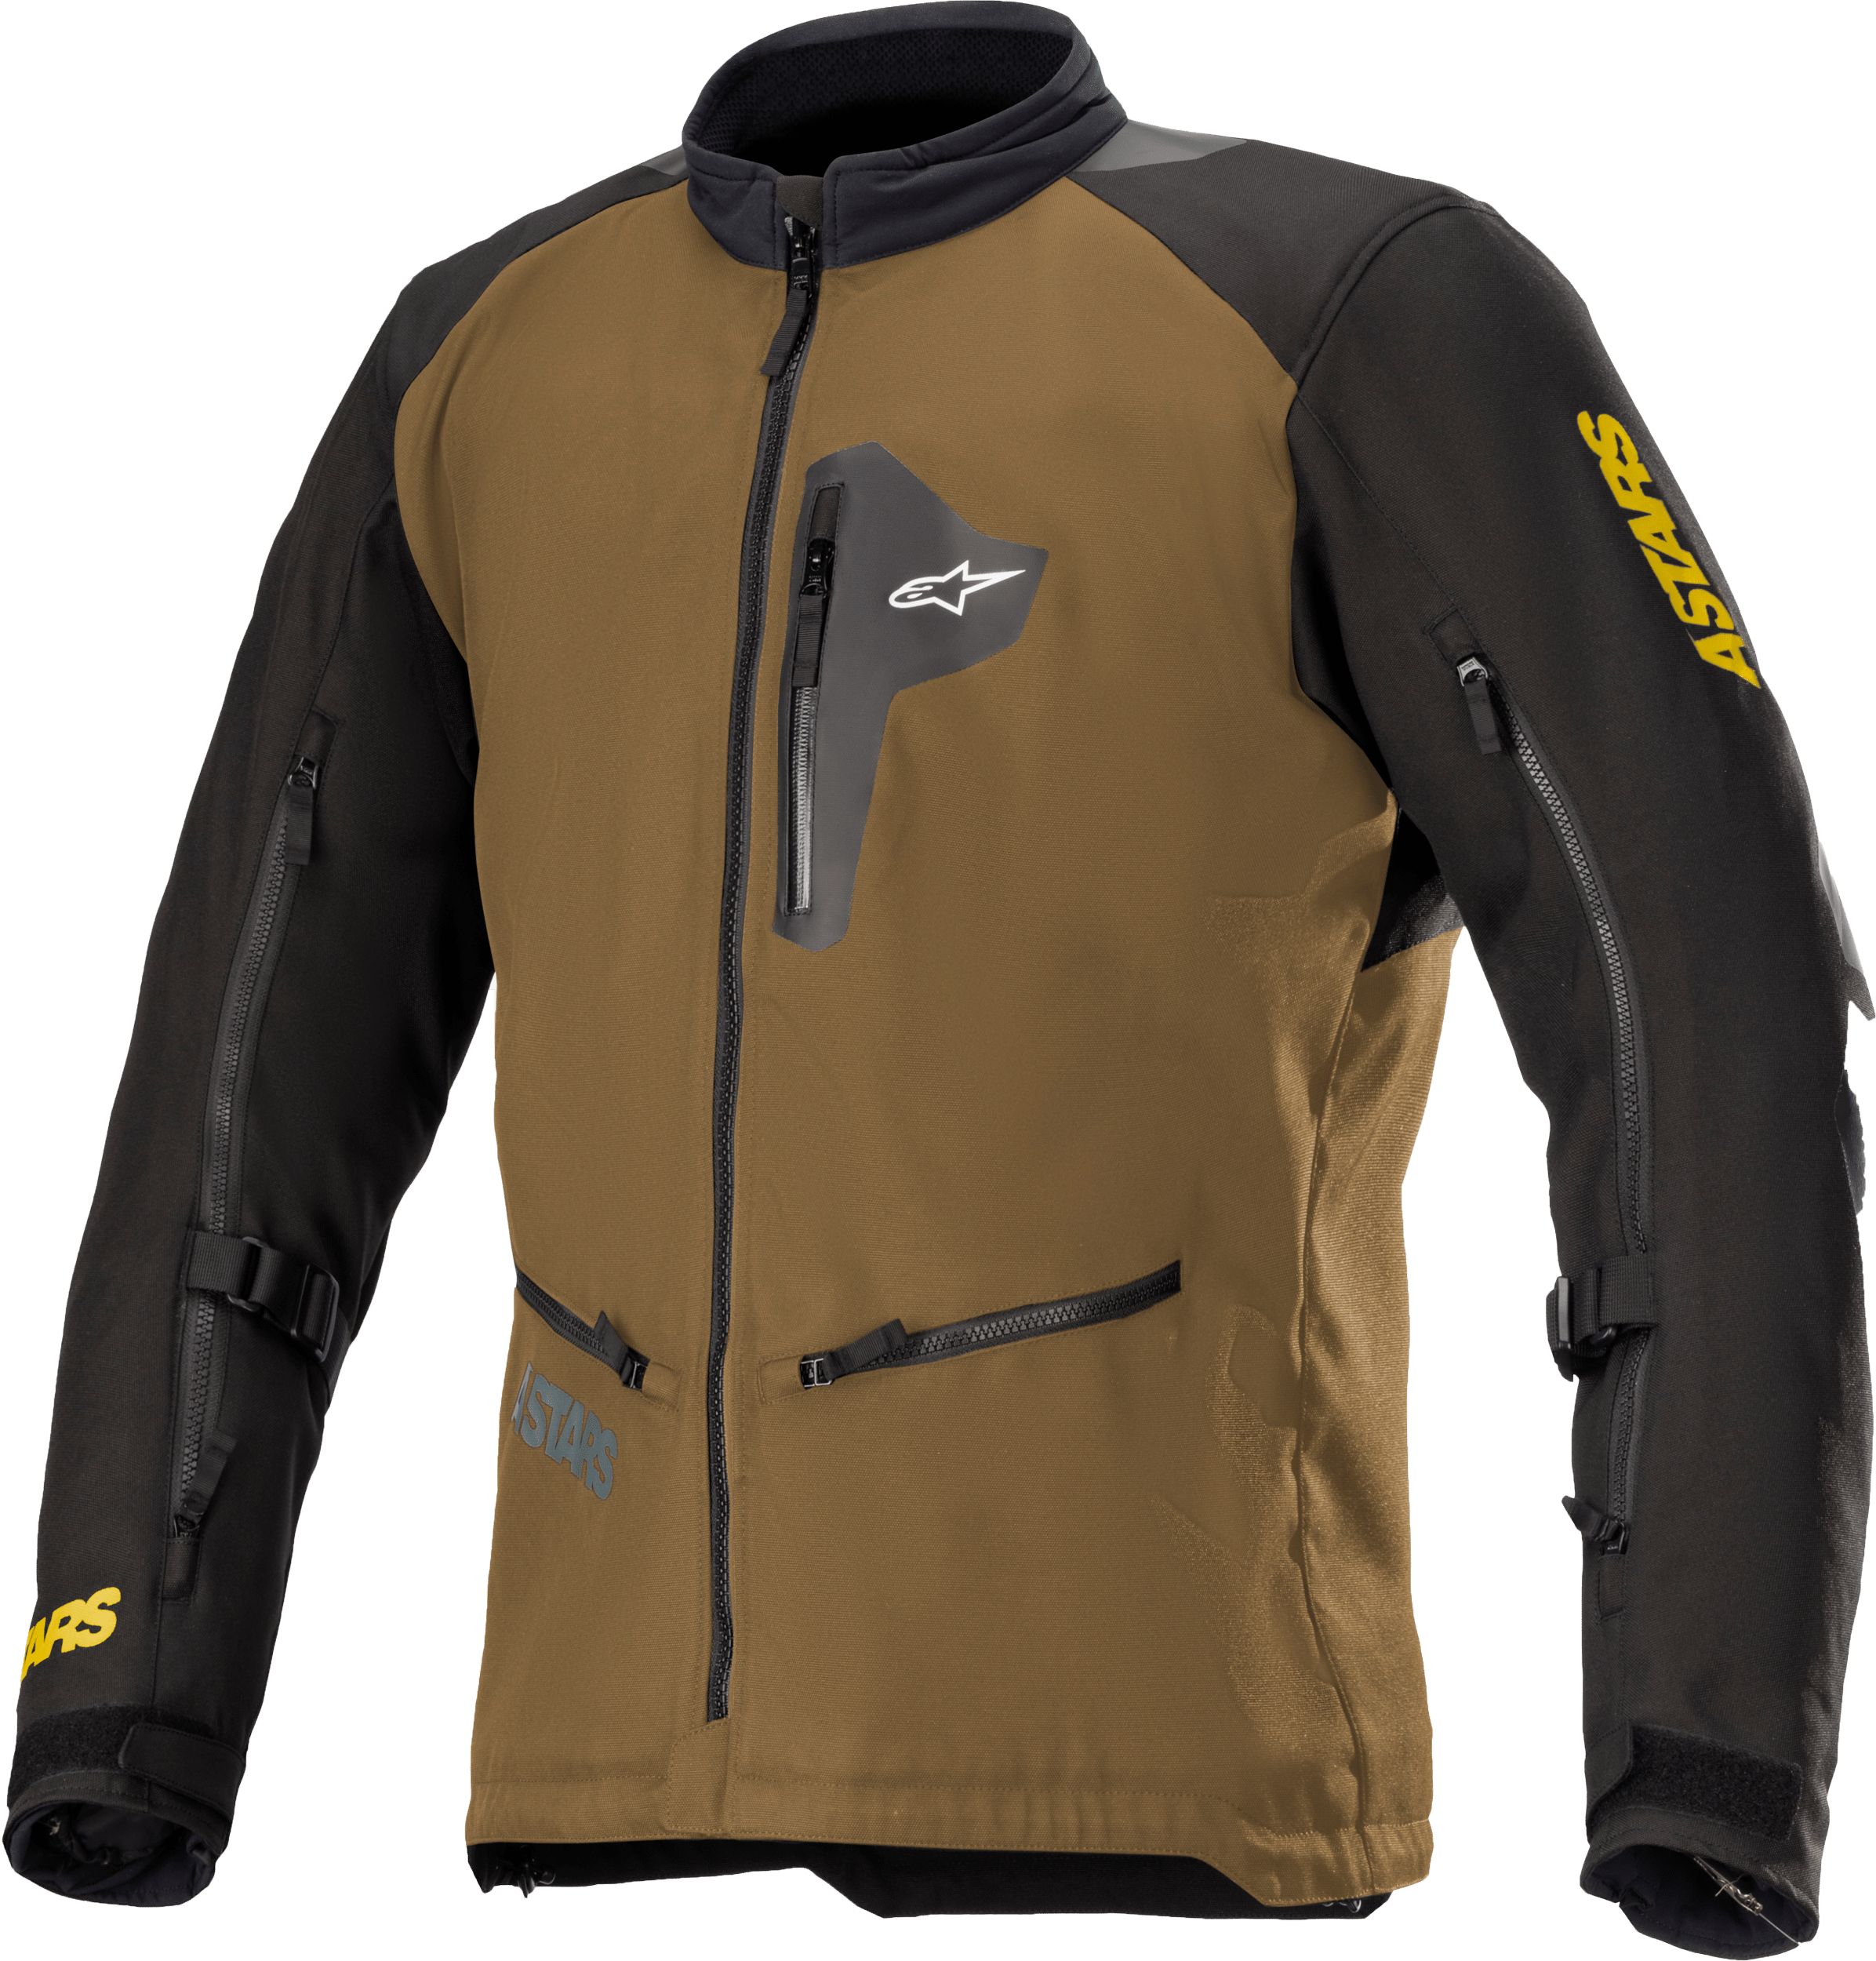 Western Powersports Jacket Camel/Black / 2X Venture Xt Jacket By Alpinestars 3303022-879-2XL